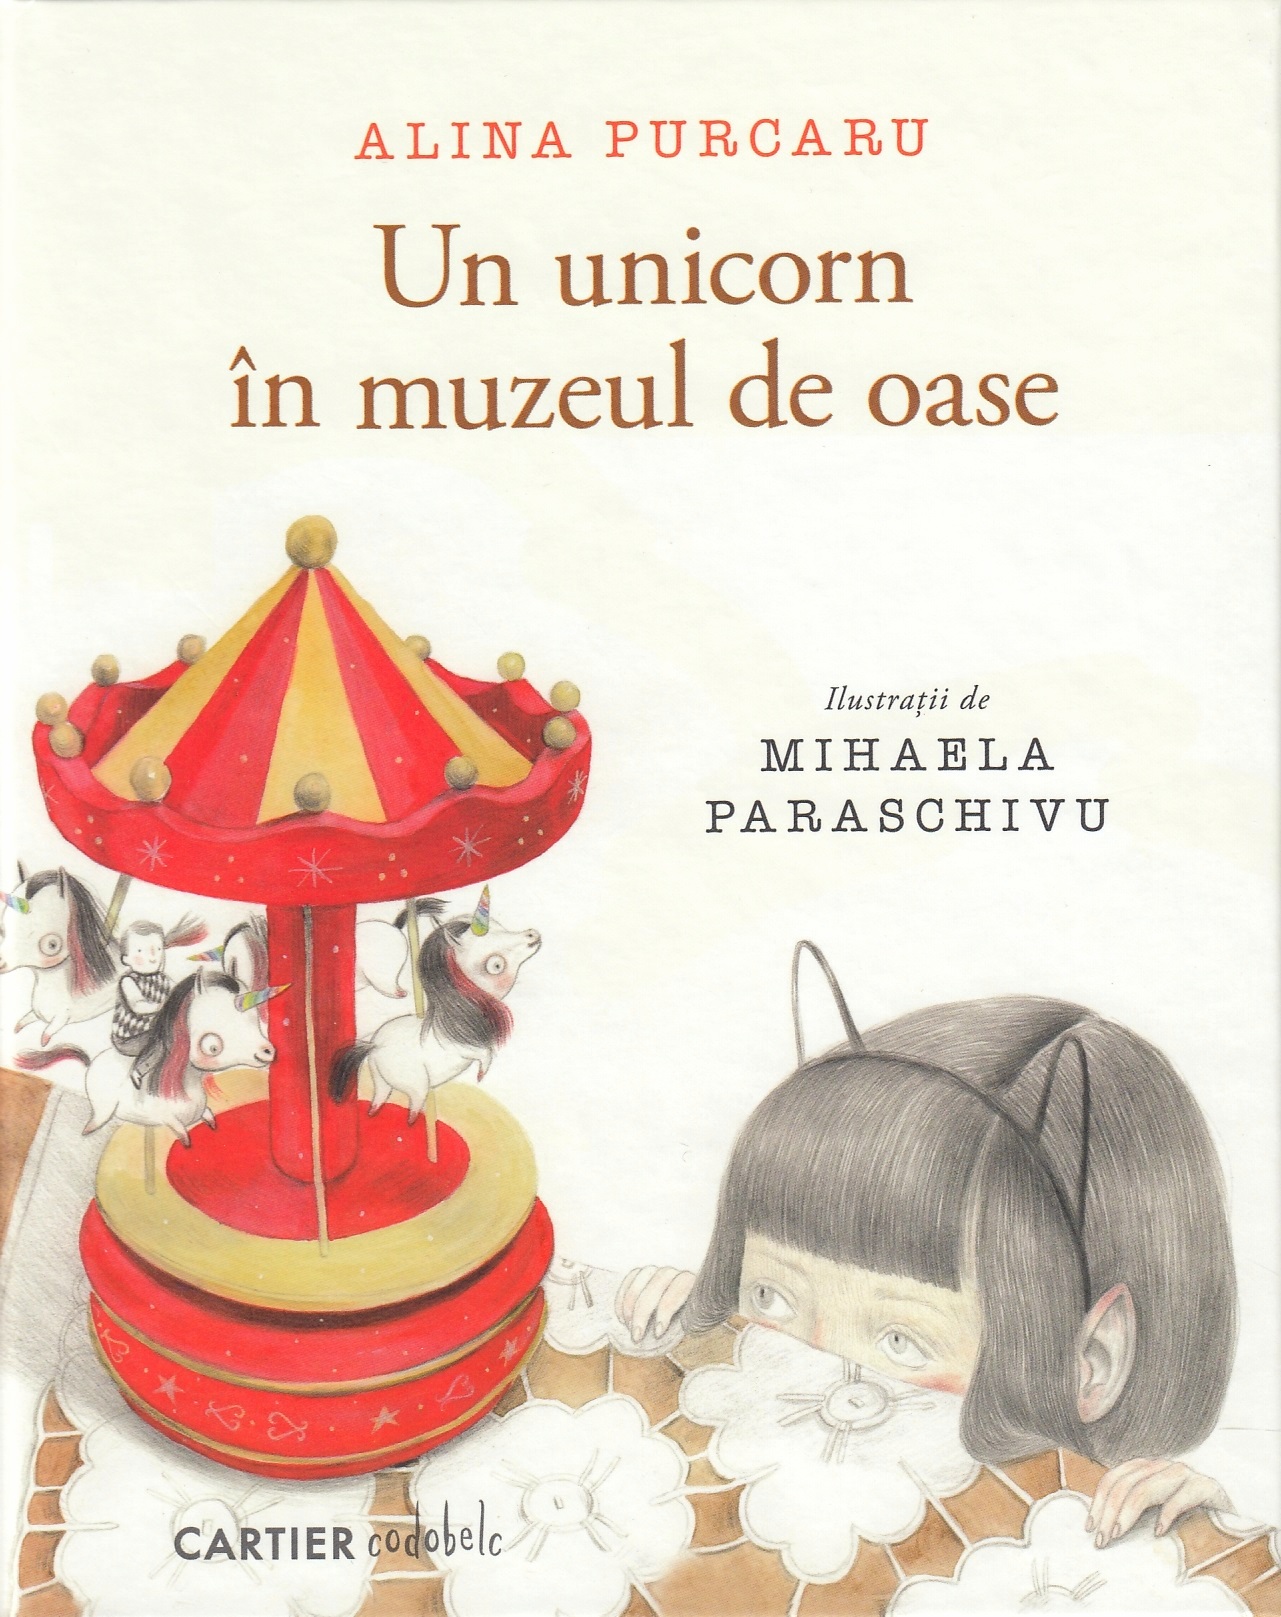 Un unicorn in muzeul de oase - Alina Purcaru, Mihaela Paraschivu